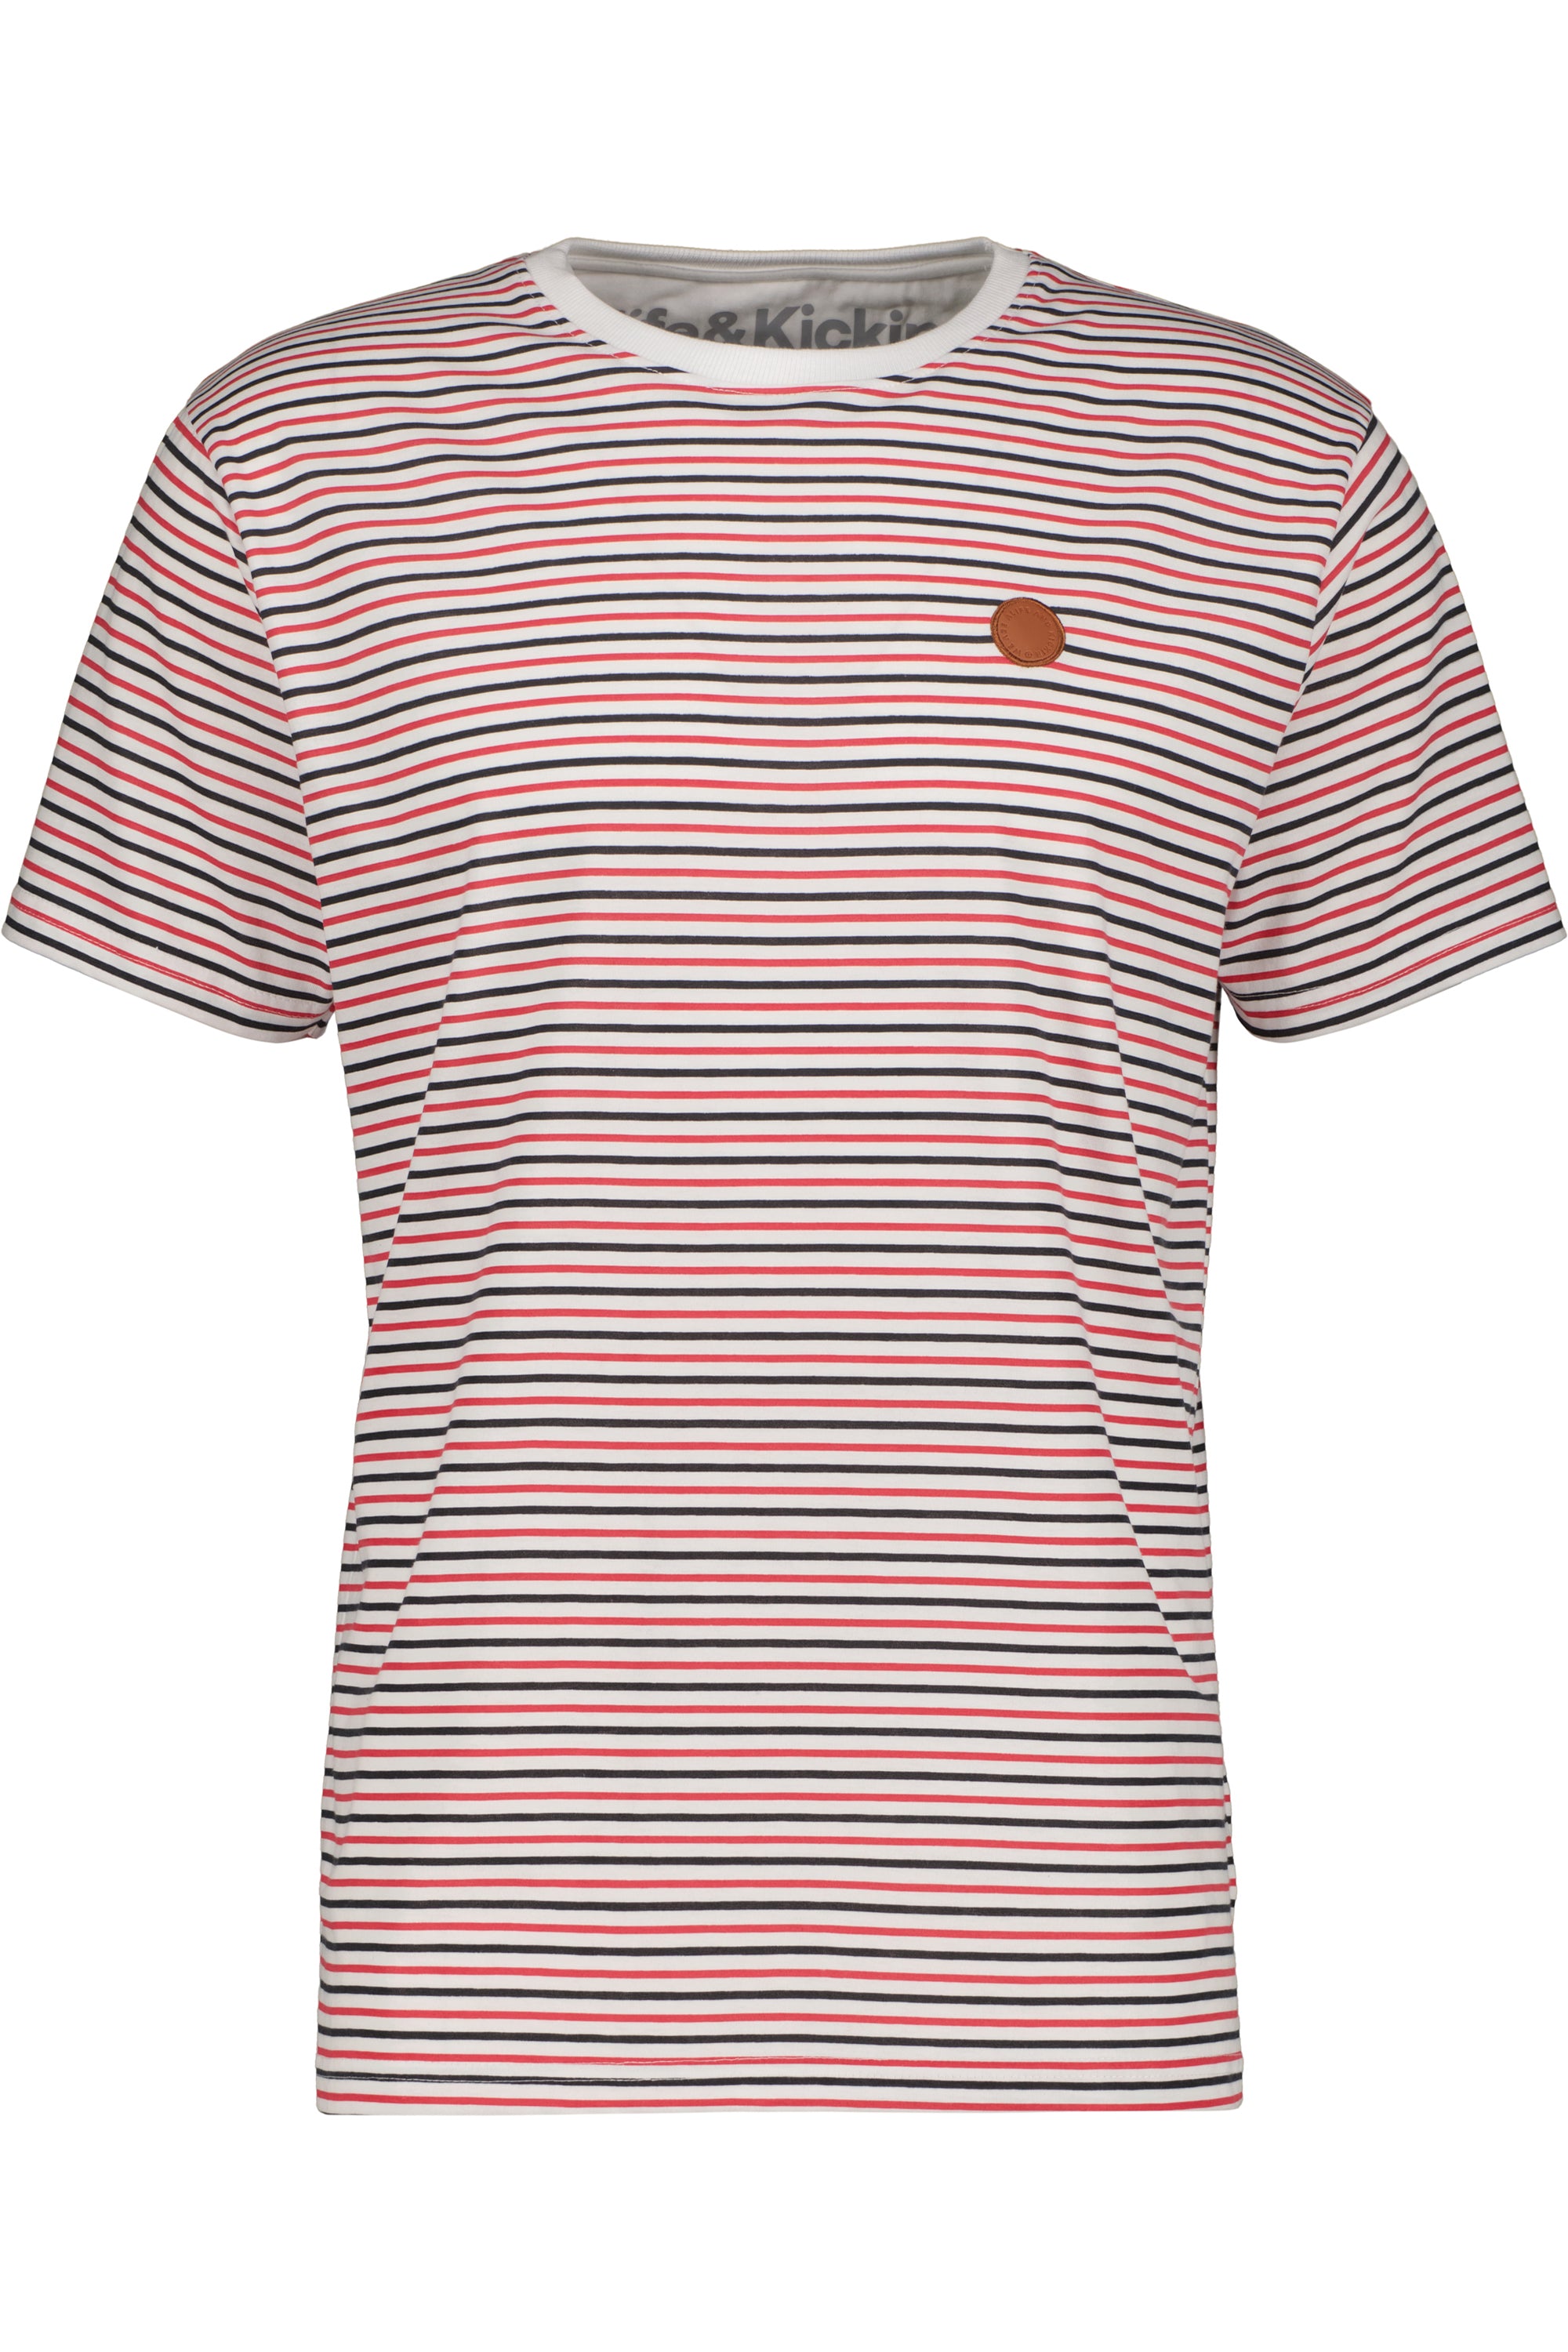 Herrenshirt NicAK Z Trendiges Streifendesign für den Sommer Grau